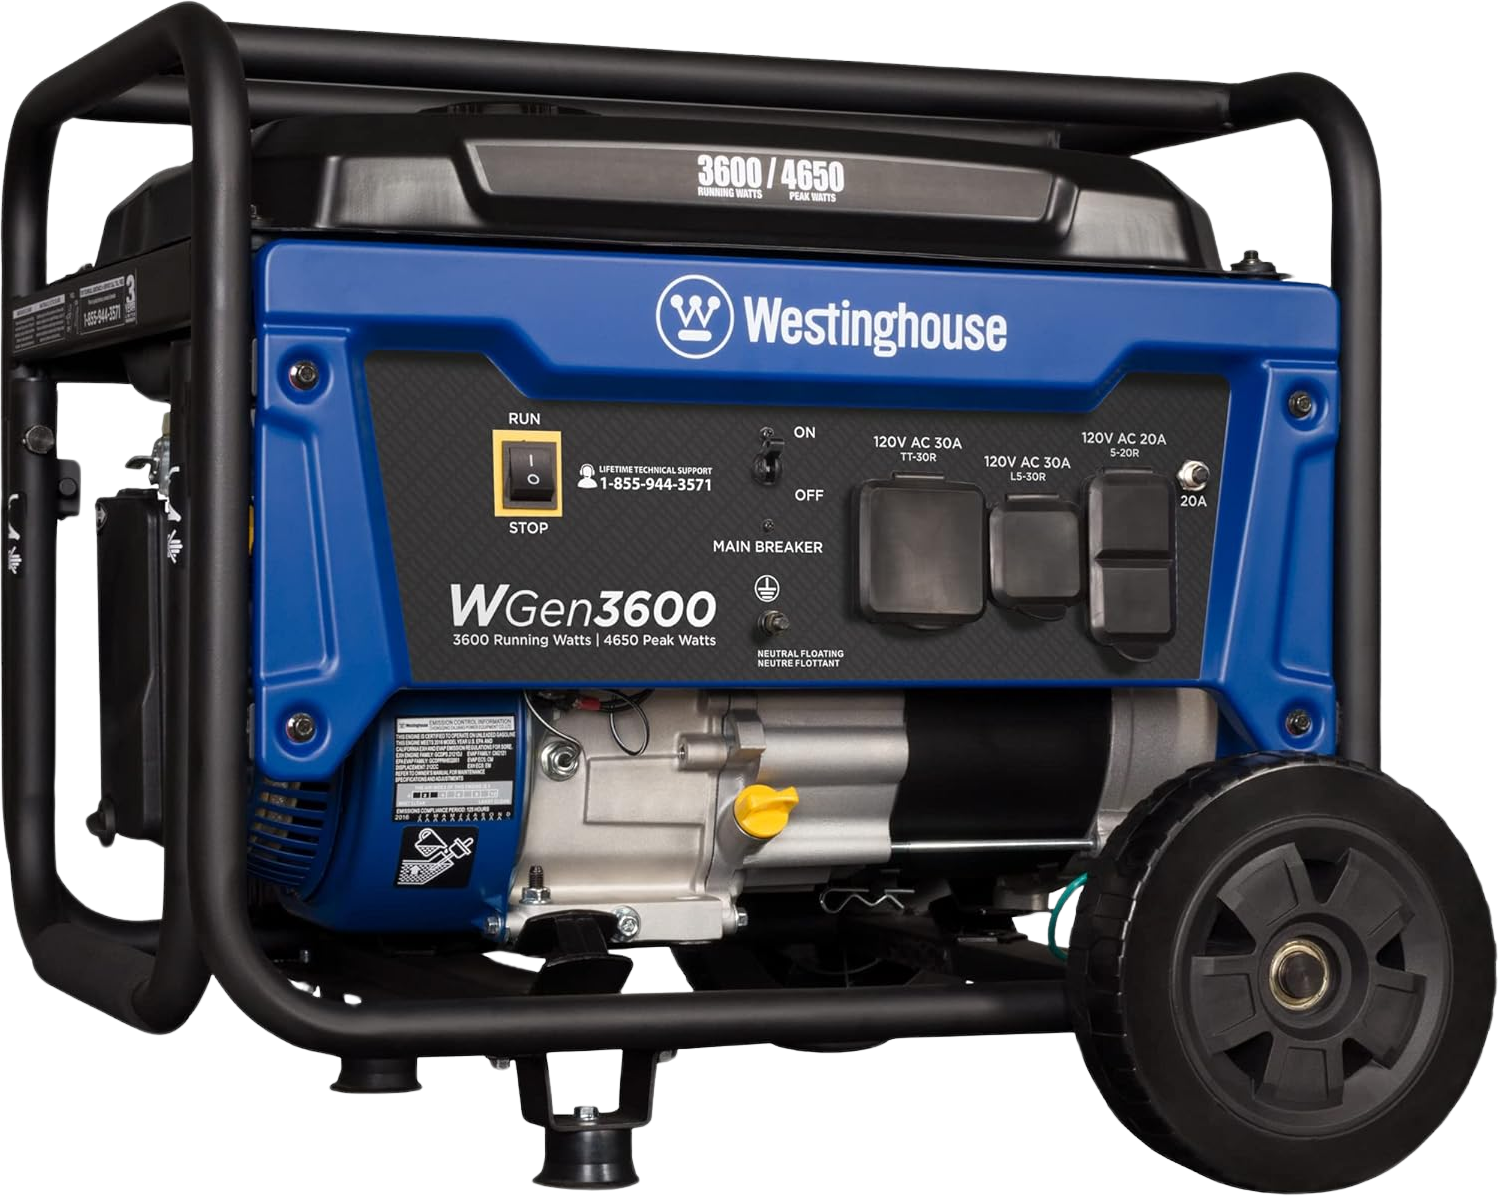 Westinghouse WGen3600 Generator 3600W/4650W 30 Amp Recoil Start Gas New